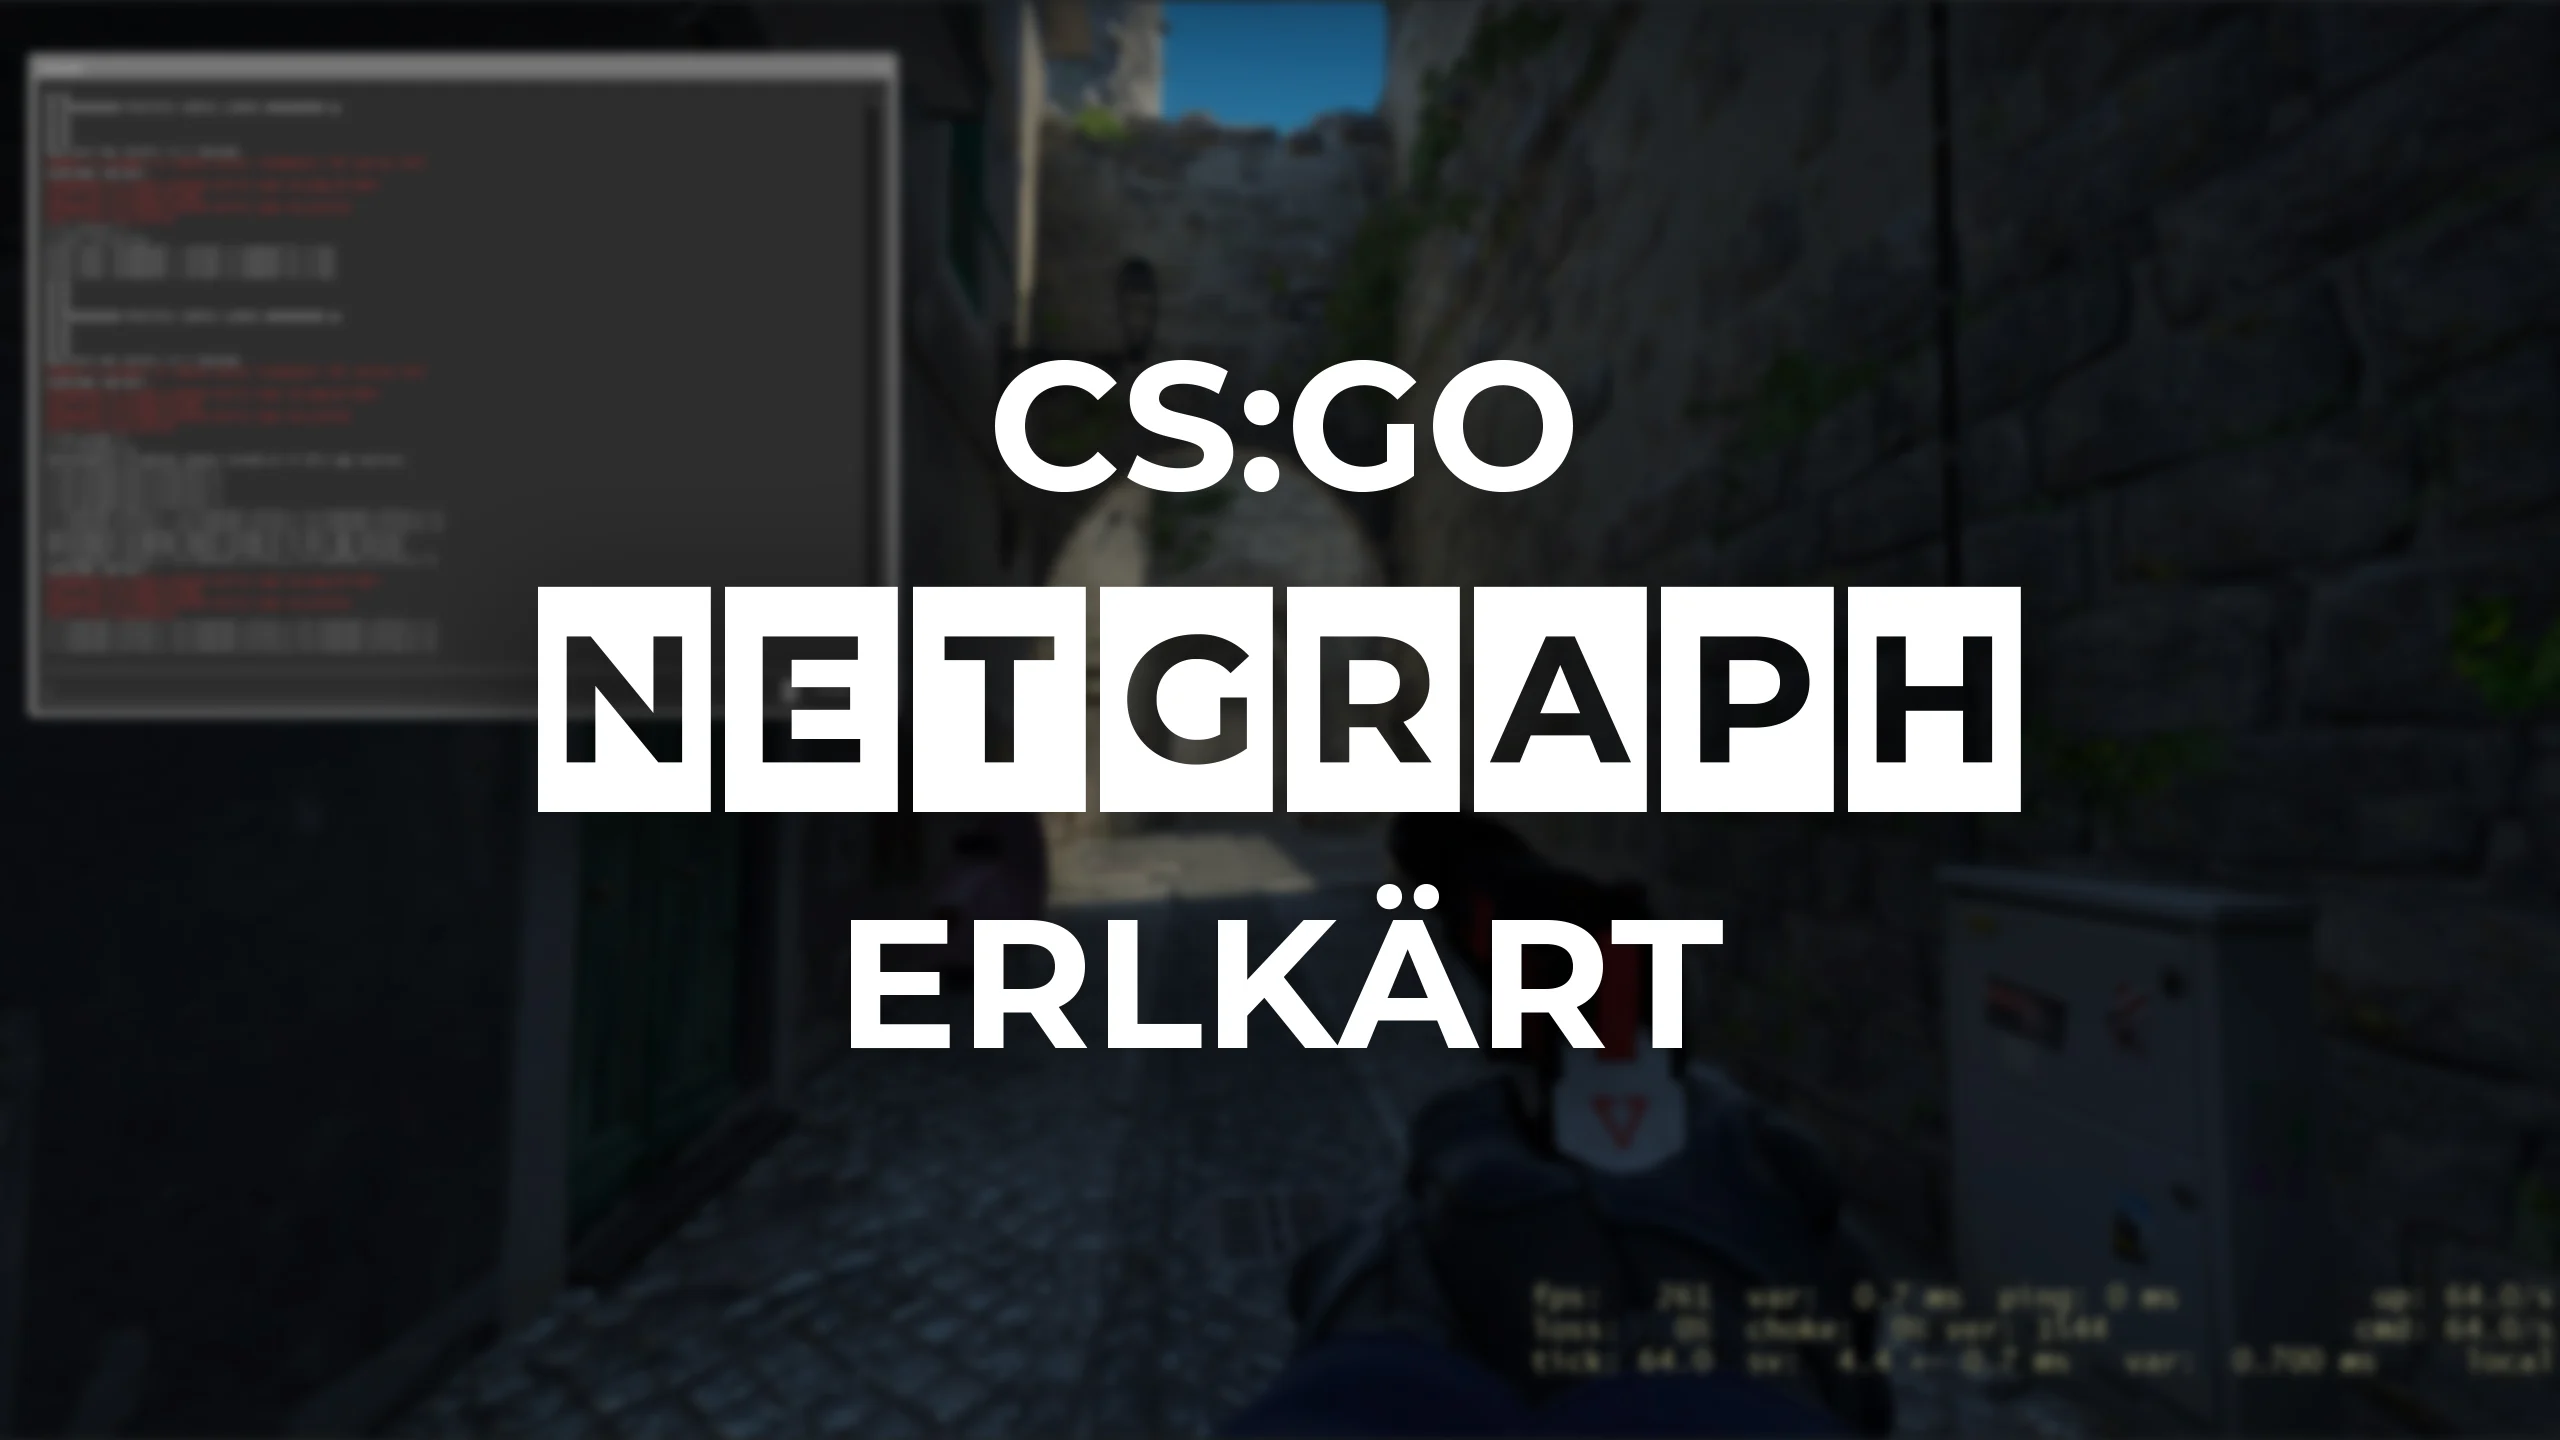 CS:GO Netgraph Erklärt